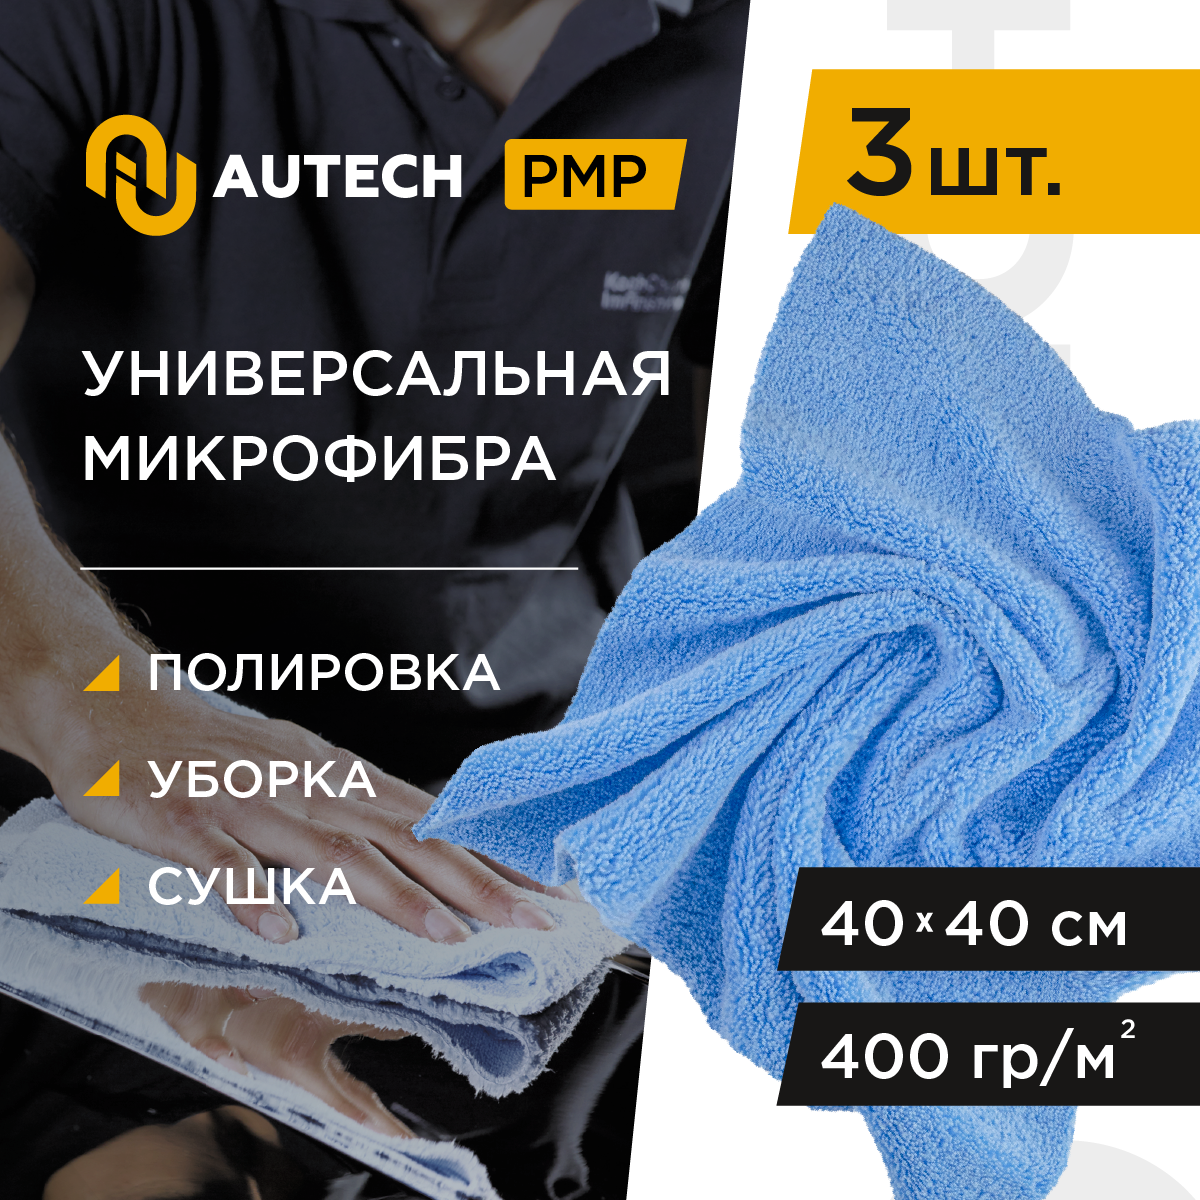 AuTech | Multifunctional microfiber - Салфетка для полировки и очистки интерьера авто. Микрофибра 40x40cm ( 3 шт)